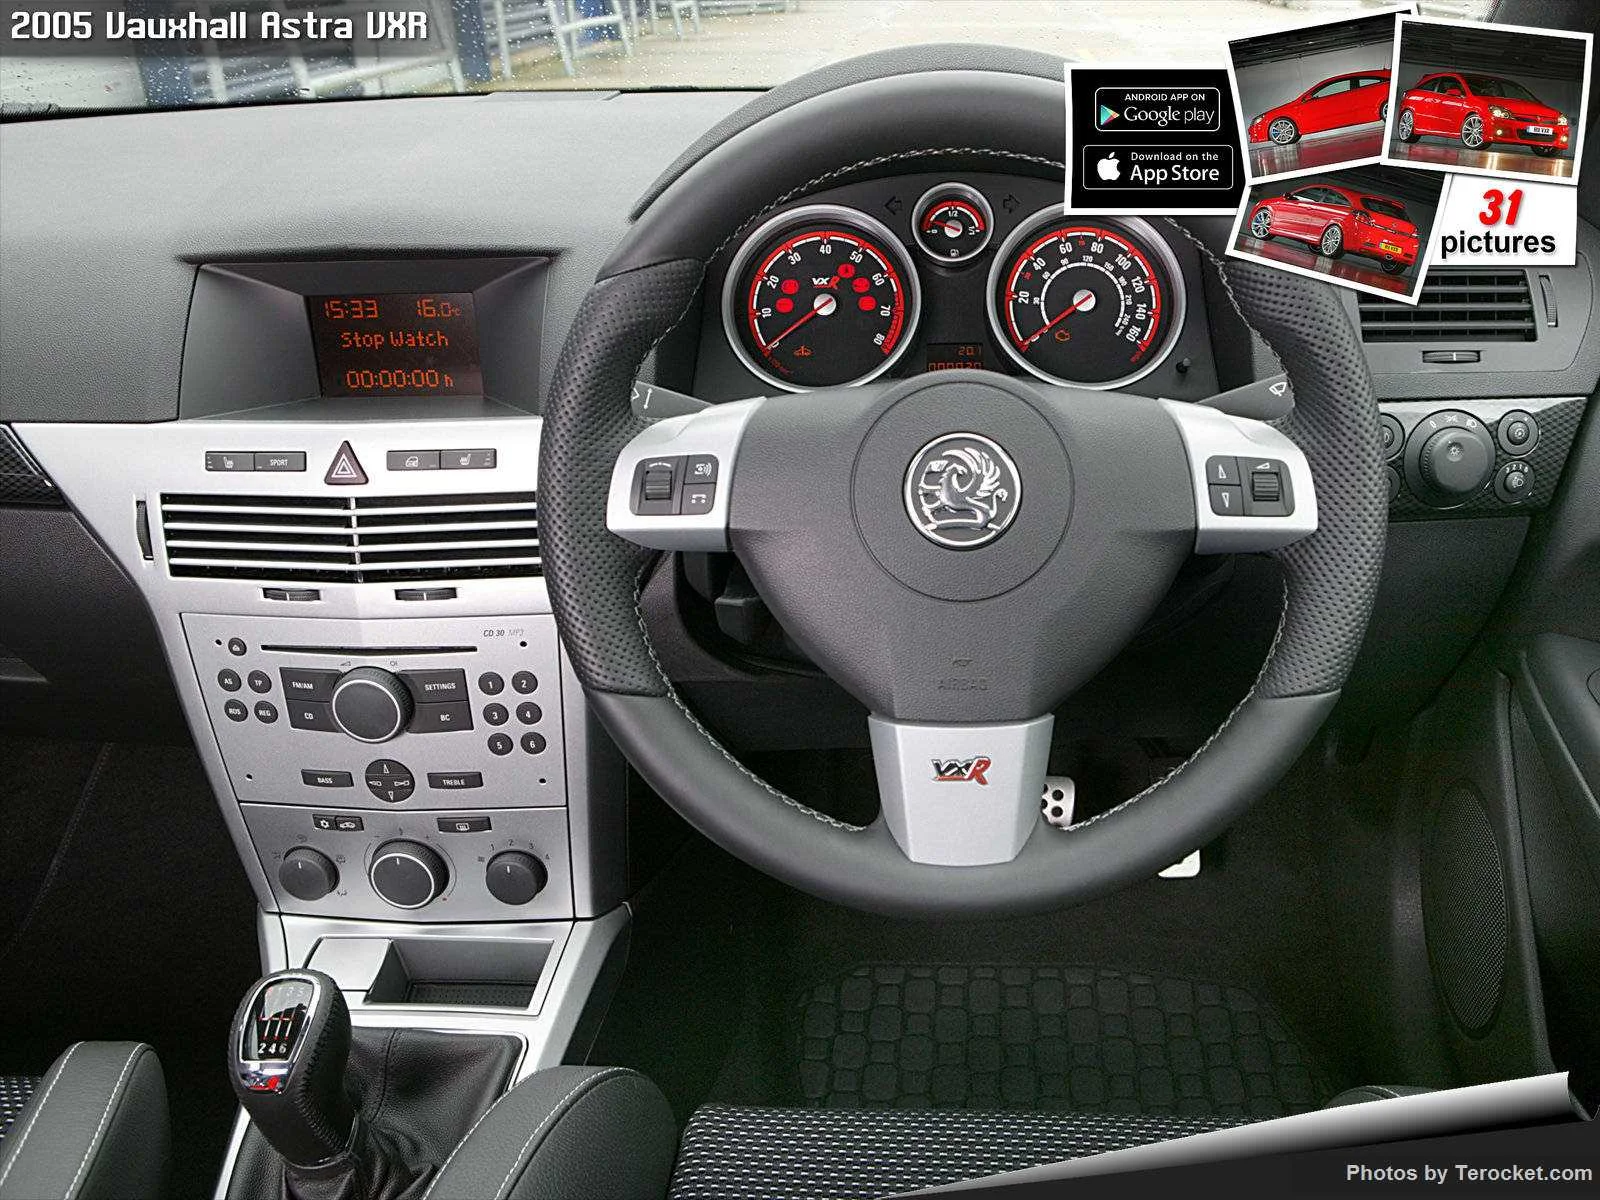 Hình ảnh xe ô tô Vauxhall Astra VXR 2005 & nội ngoại thất